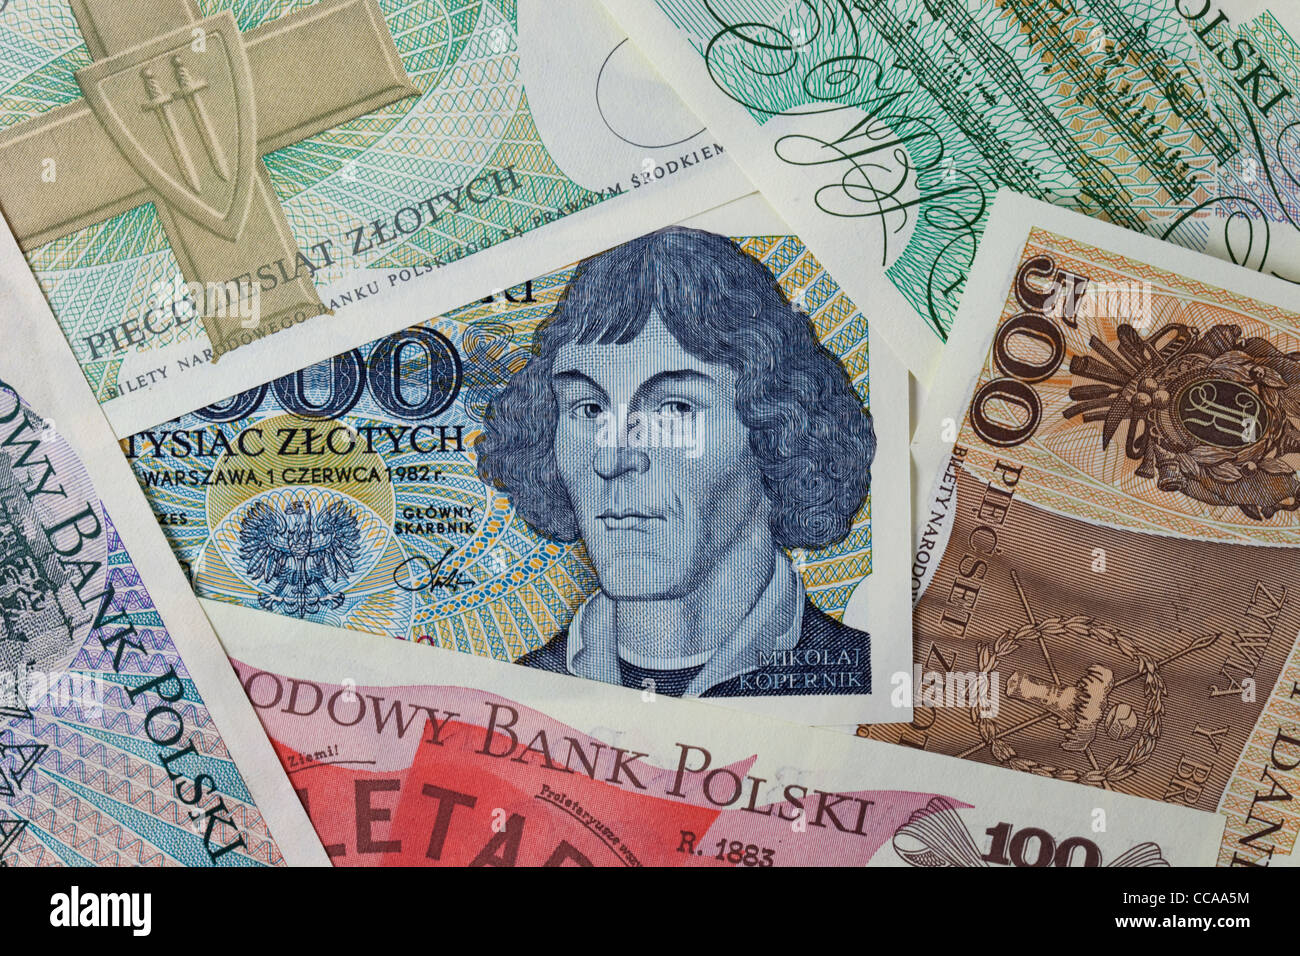 L'astronome Copernic (portrait) sur un billet de banque polonaise vintage encadrée par d'autres billets de la même édition Banque D'Images